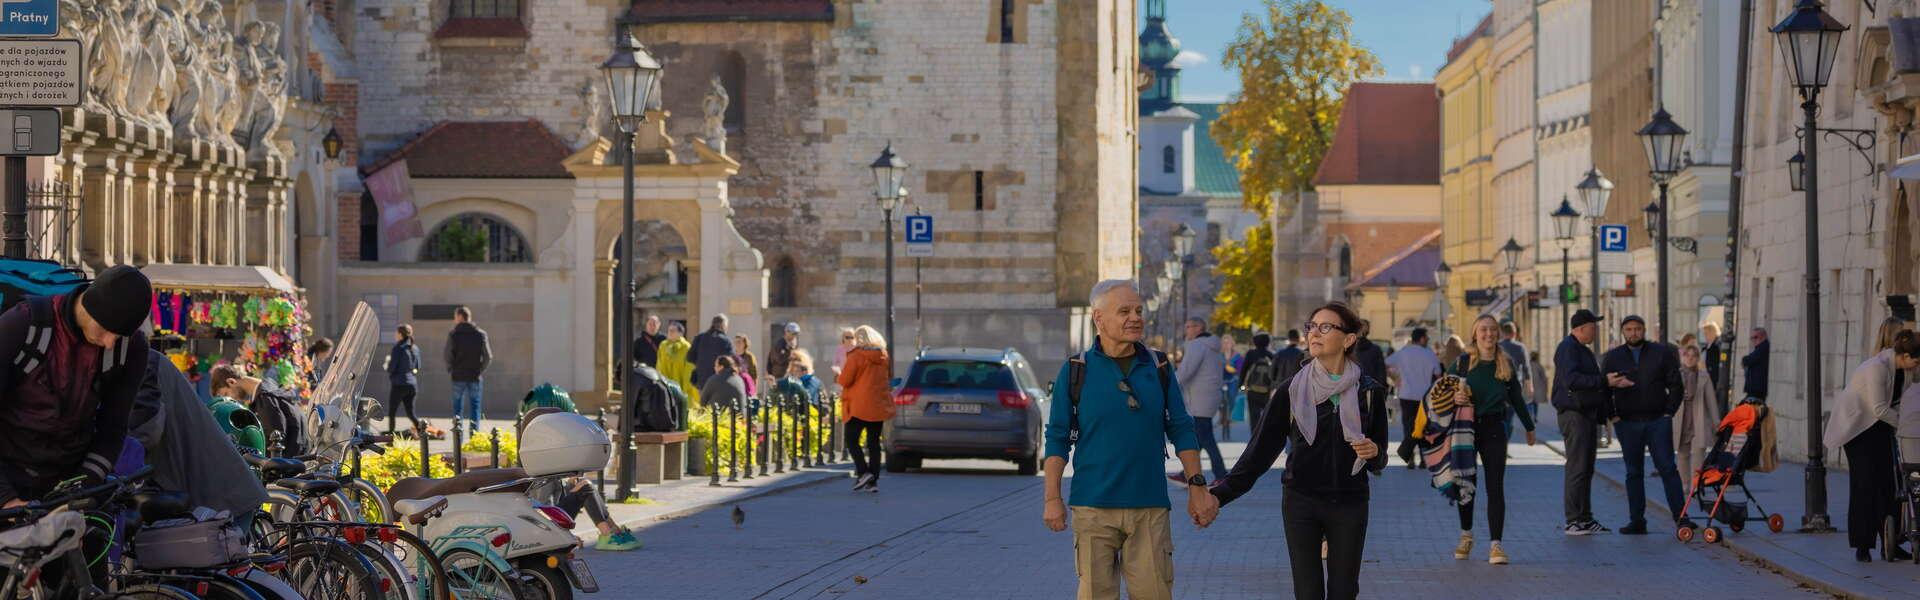 Bild: Kraków für Senioren. Sehenswürdigkeiten und Orte, die man unbedingt besuchen soll